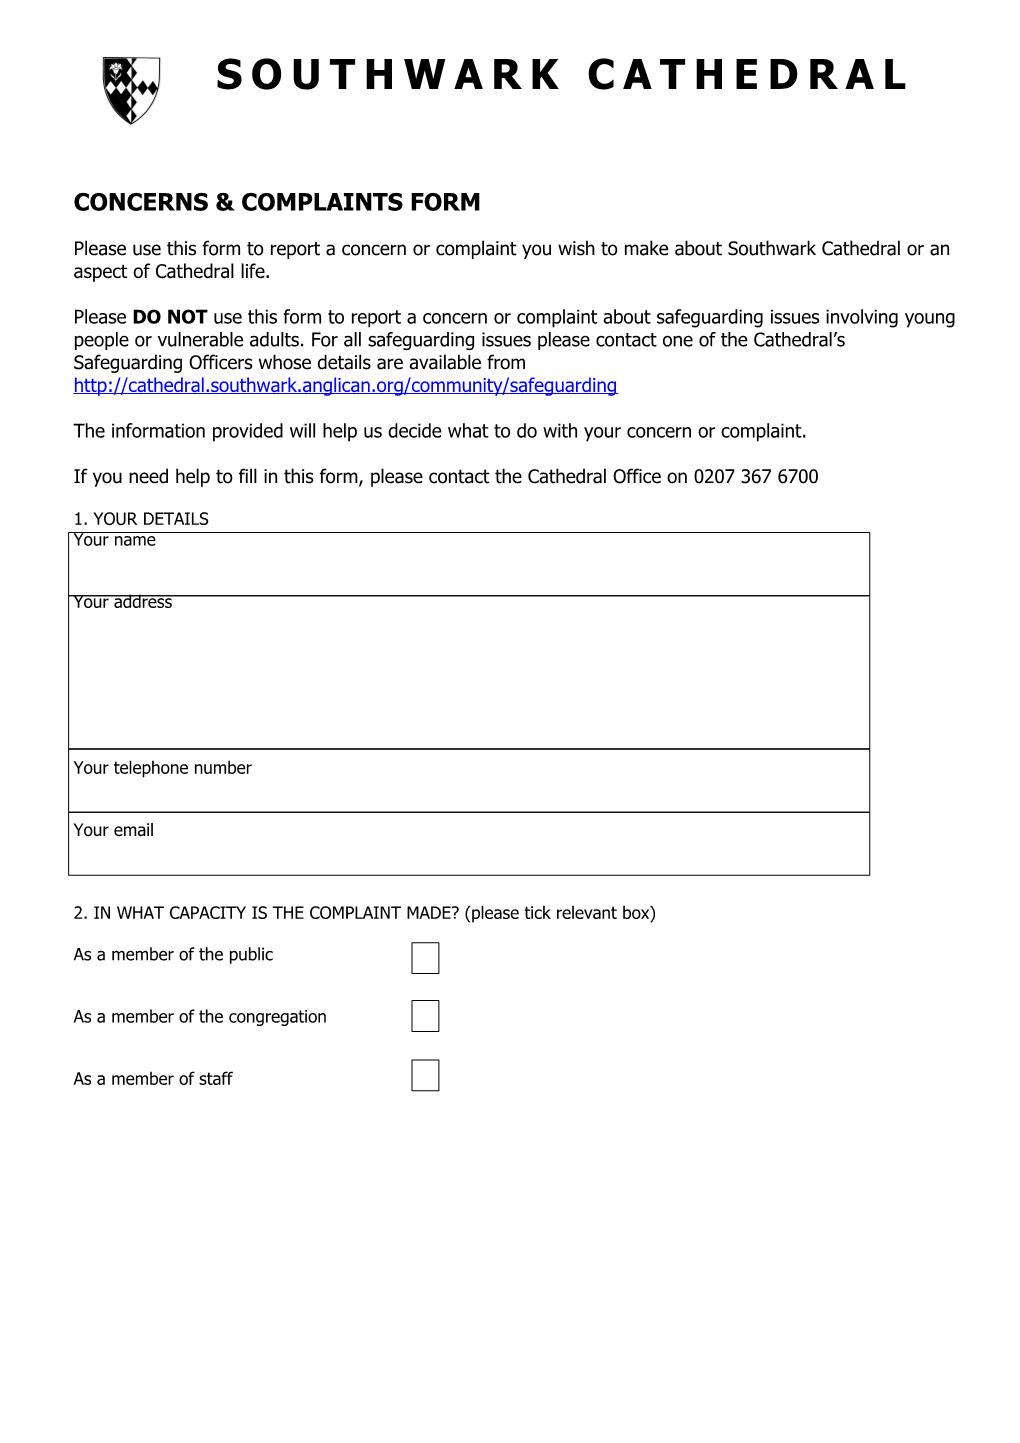 Concerns & Complaints Form